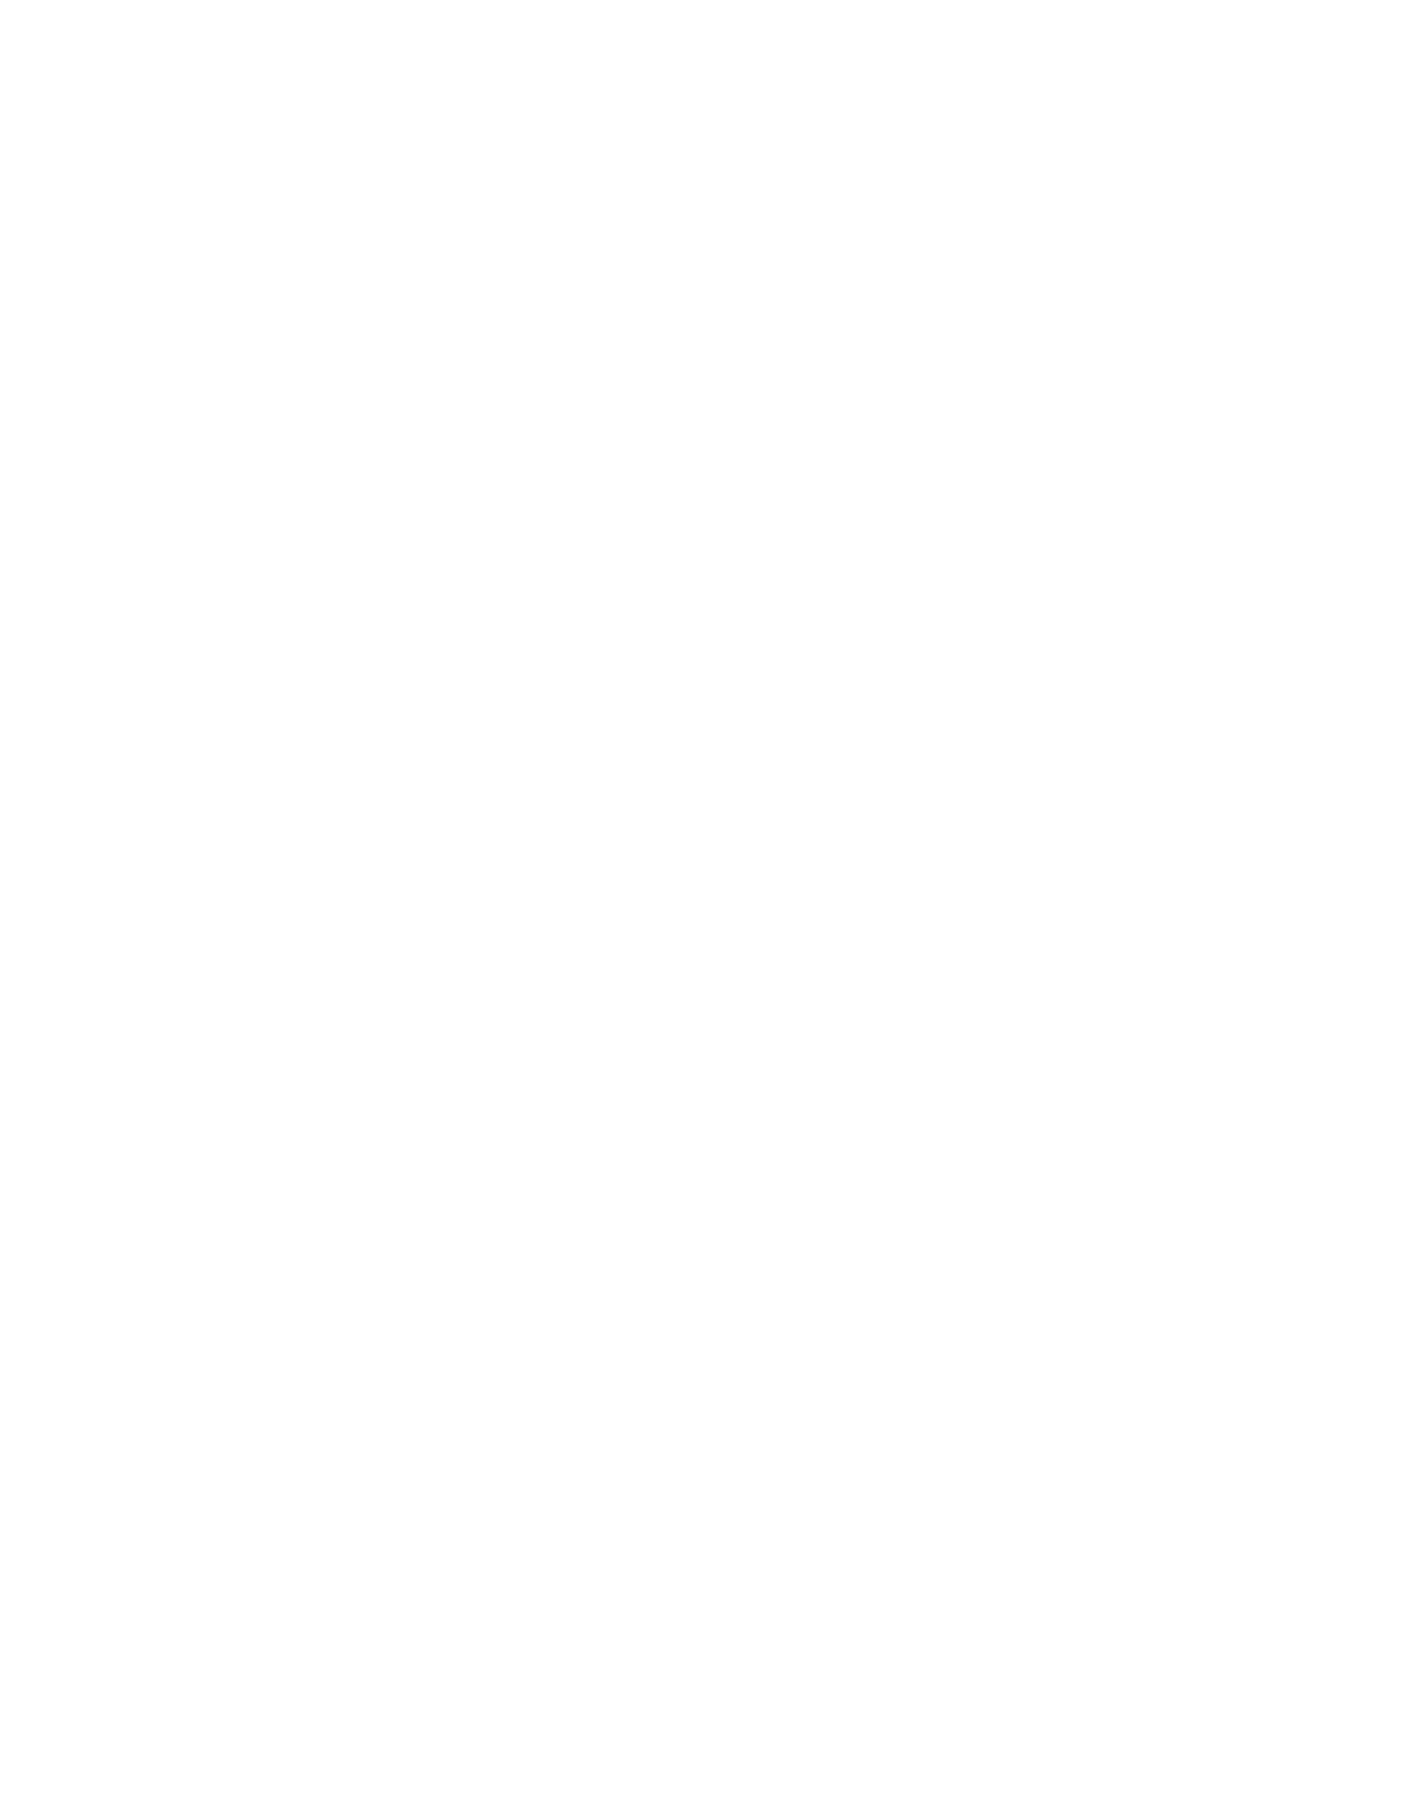 Imagine Rotary - Horizontal - White